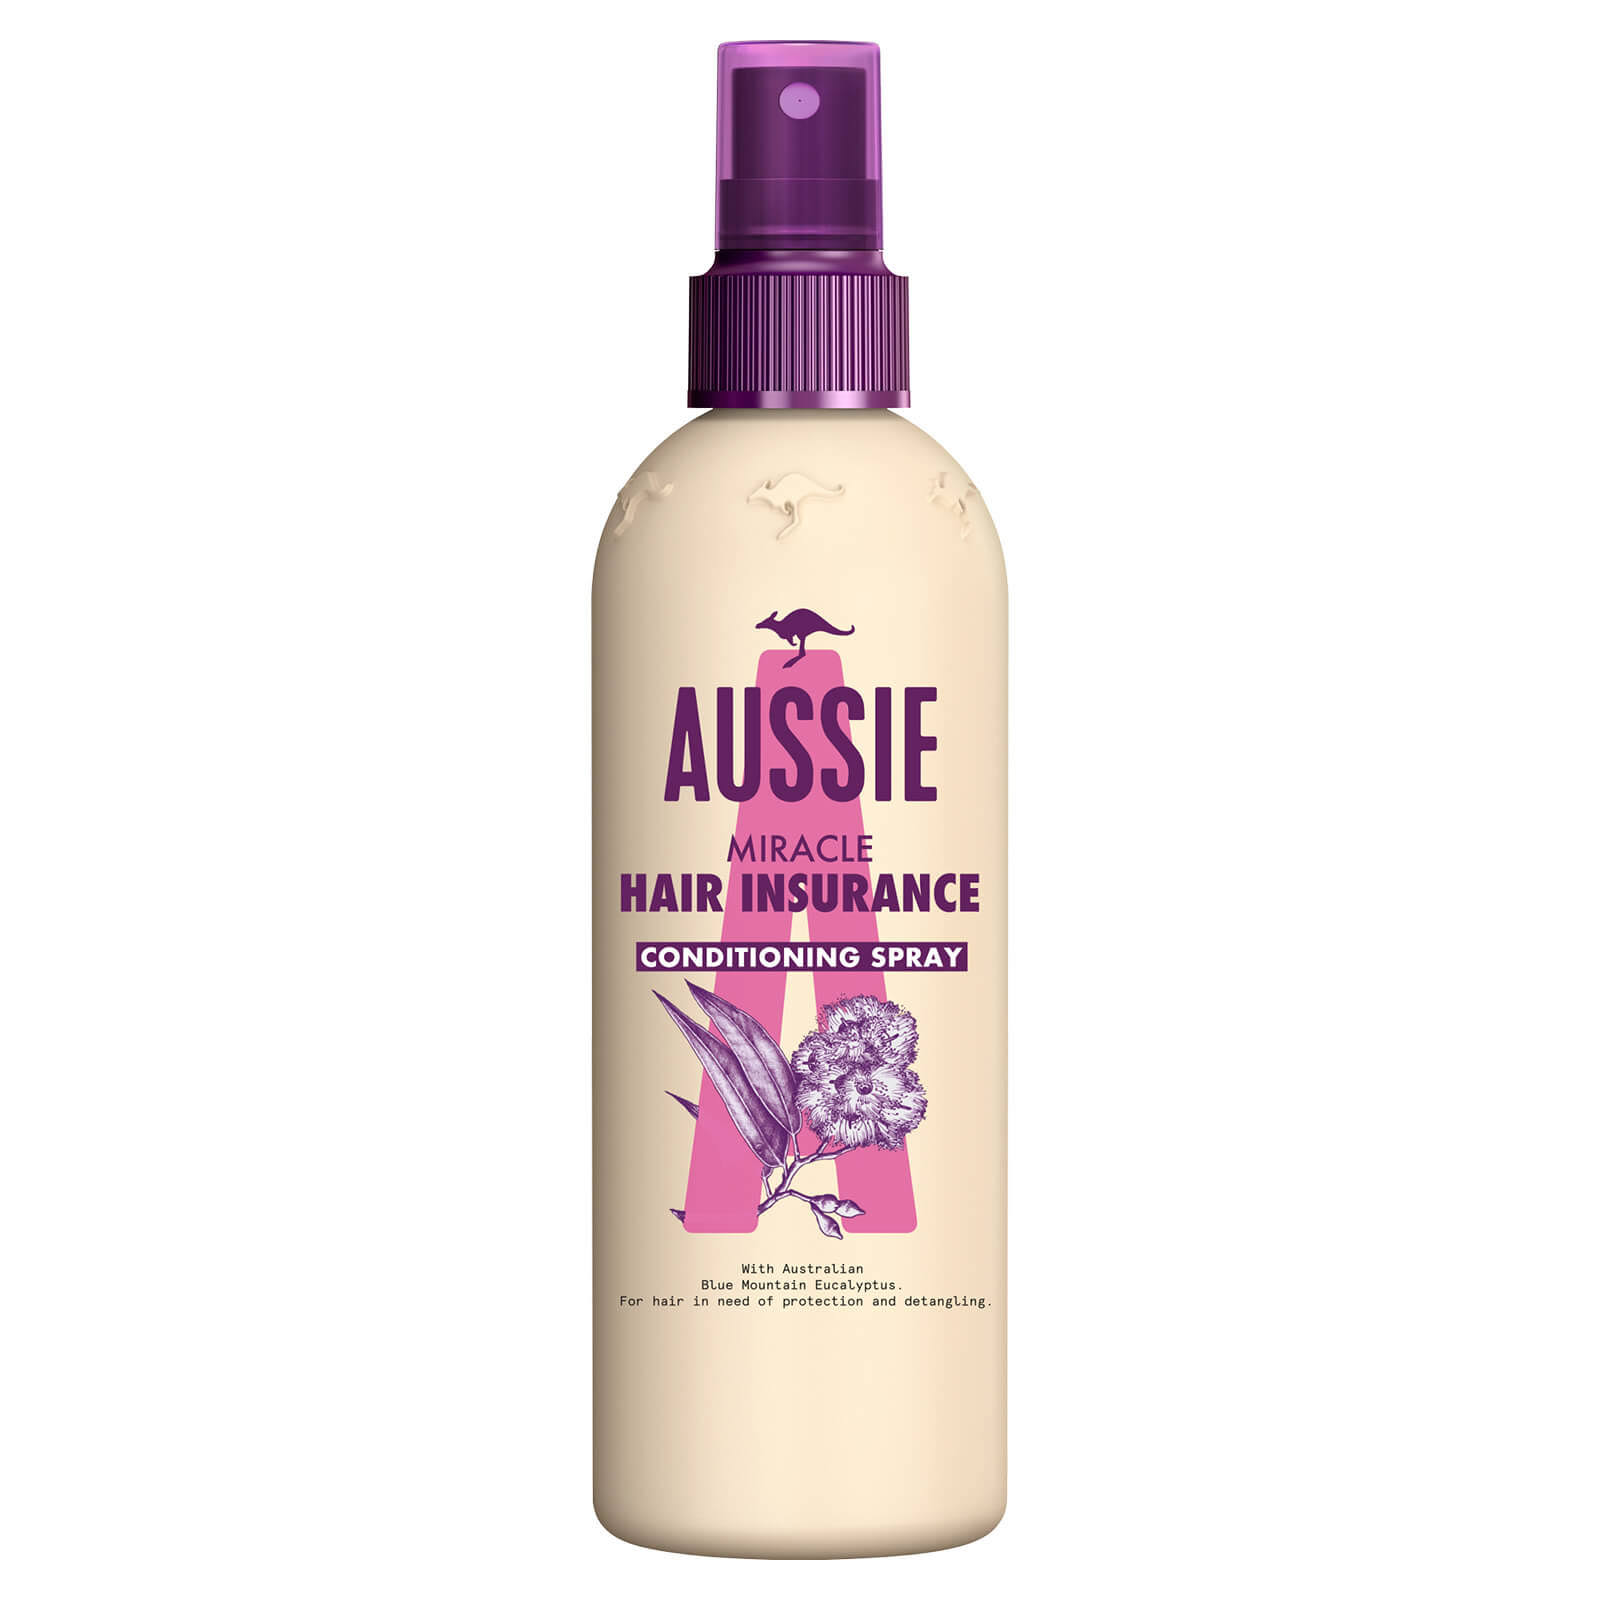 Aussie Hair Insurance Leave In Hair Conditioner Spray - 250ml